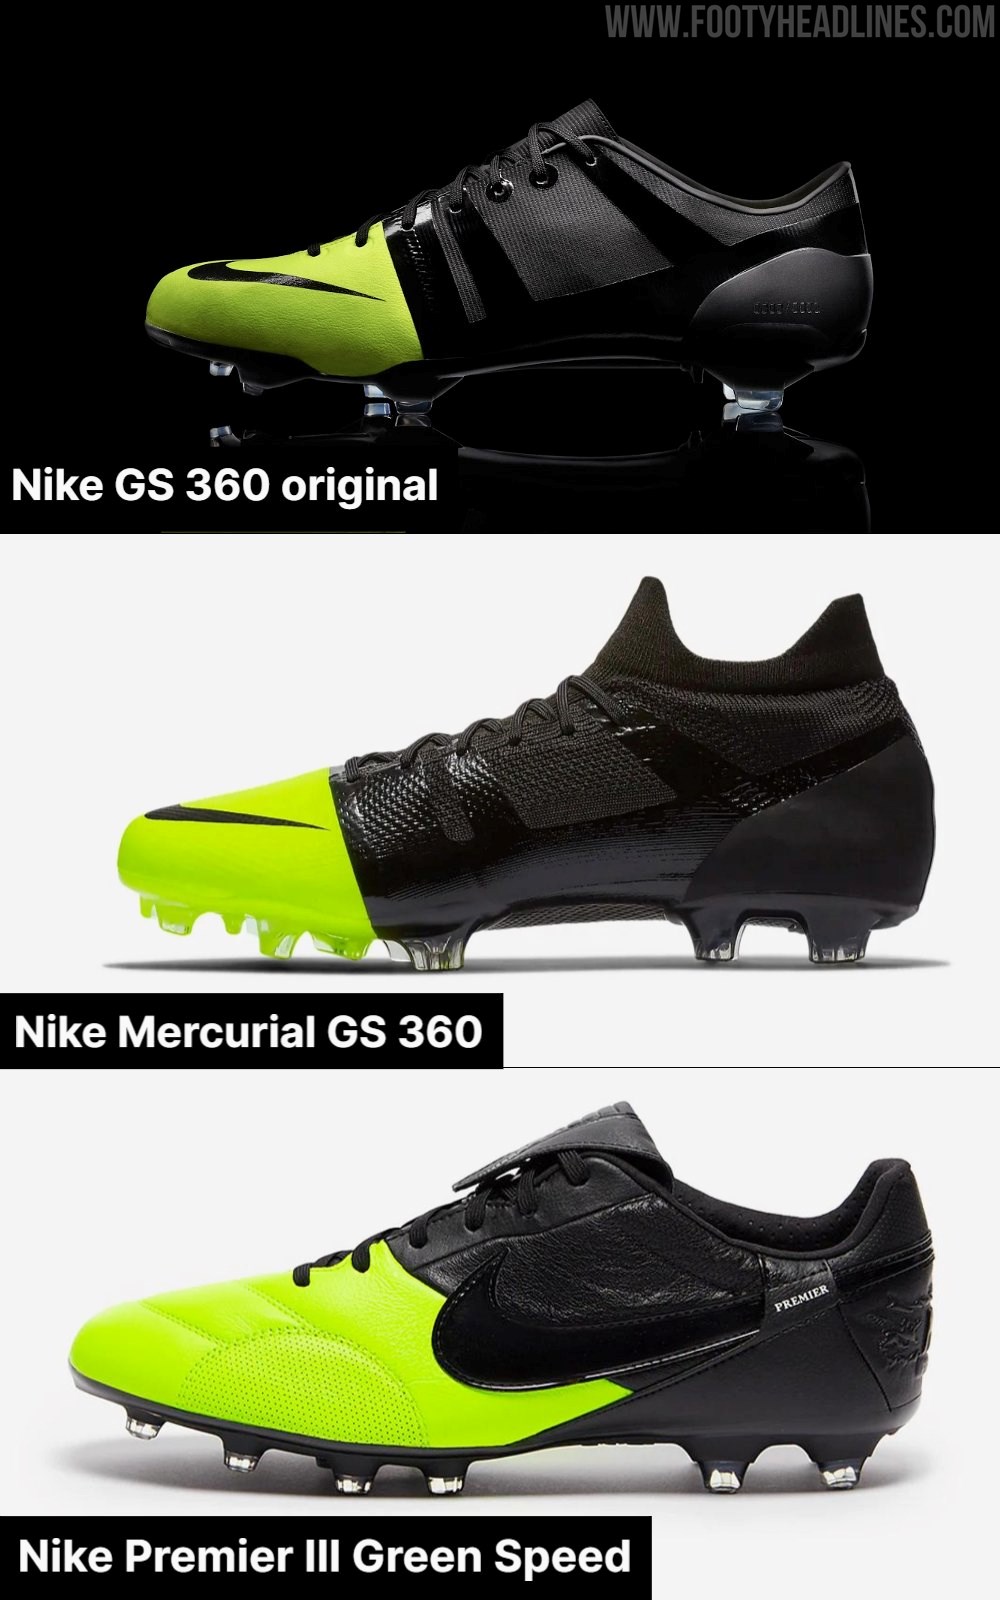 Nike Premier III 'Green Speed' Colorway Released Footy